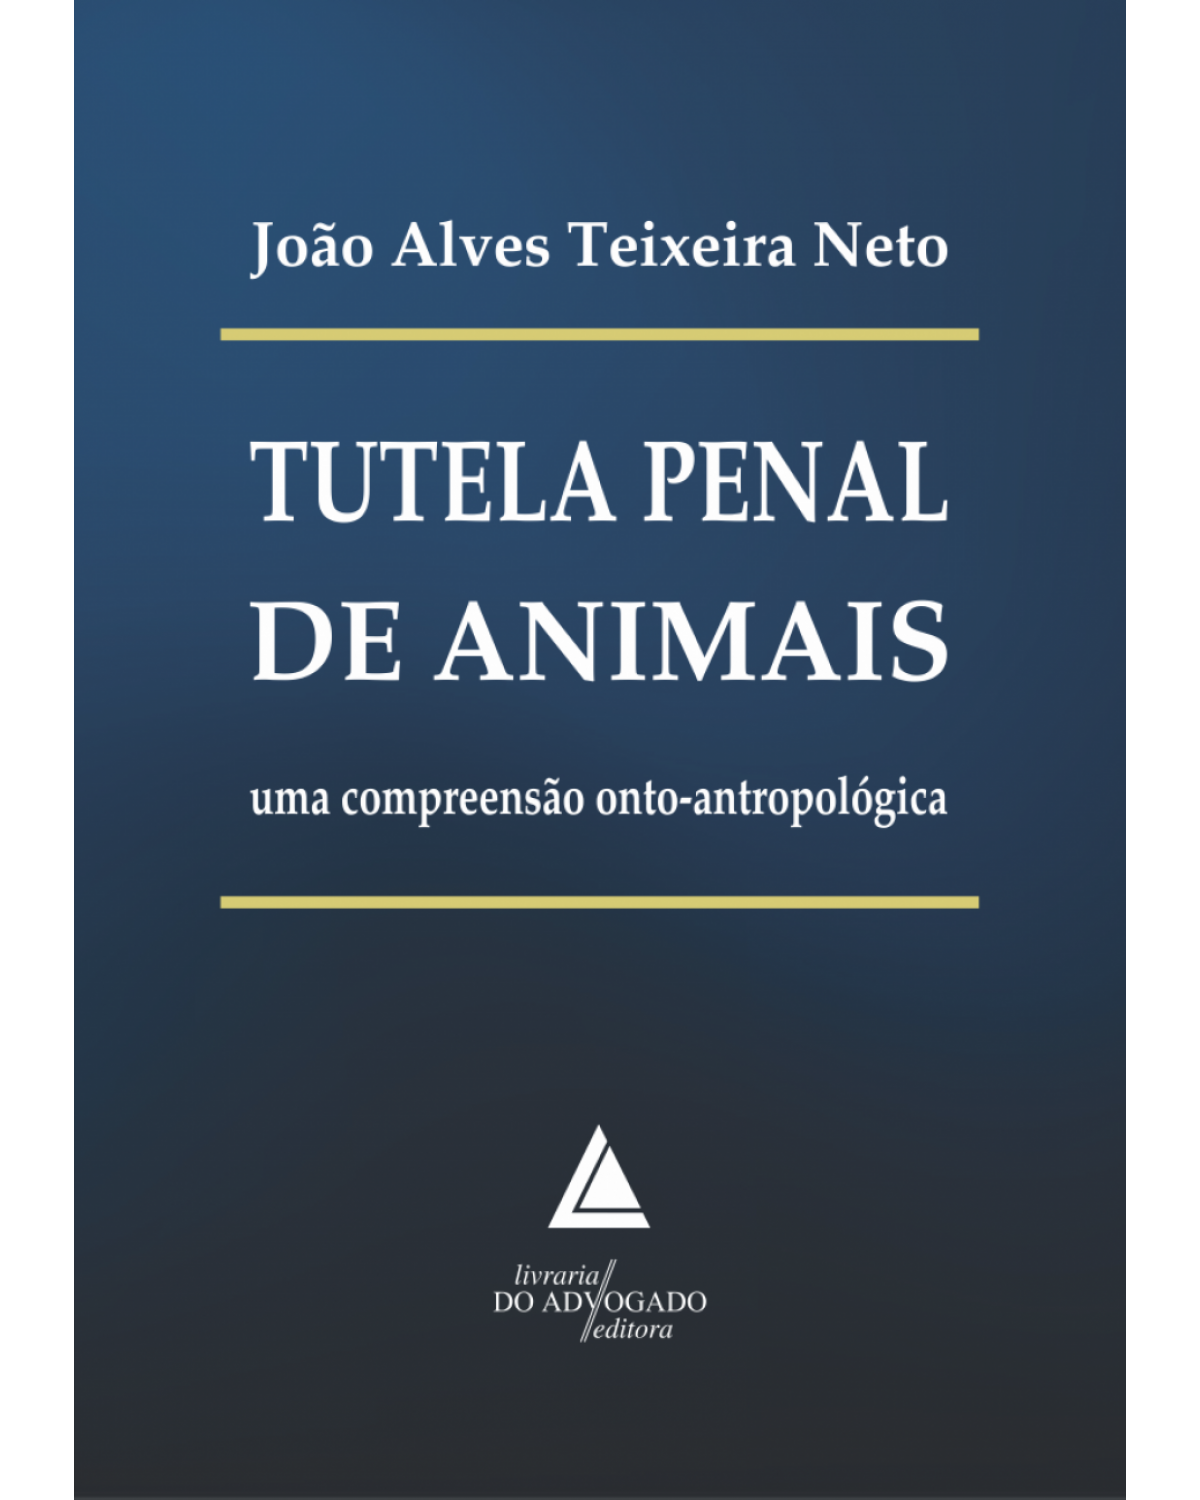 Tutela penal de animais: uma compreensão onto-antropológica - 1ª Edição | 2017